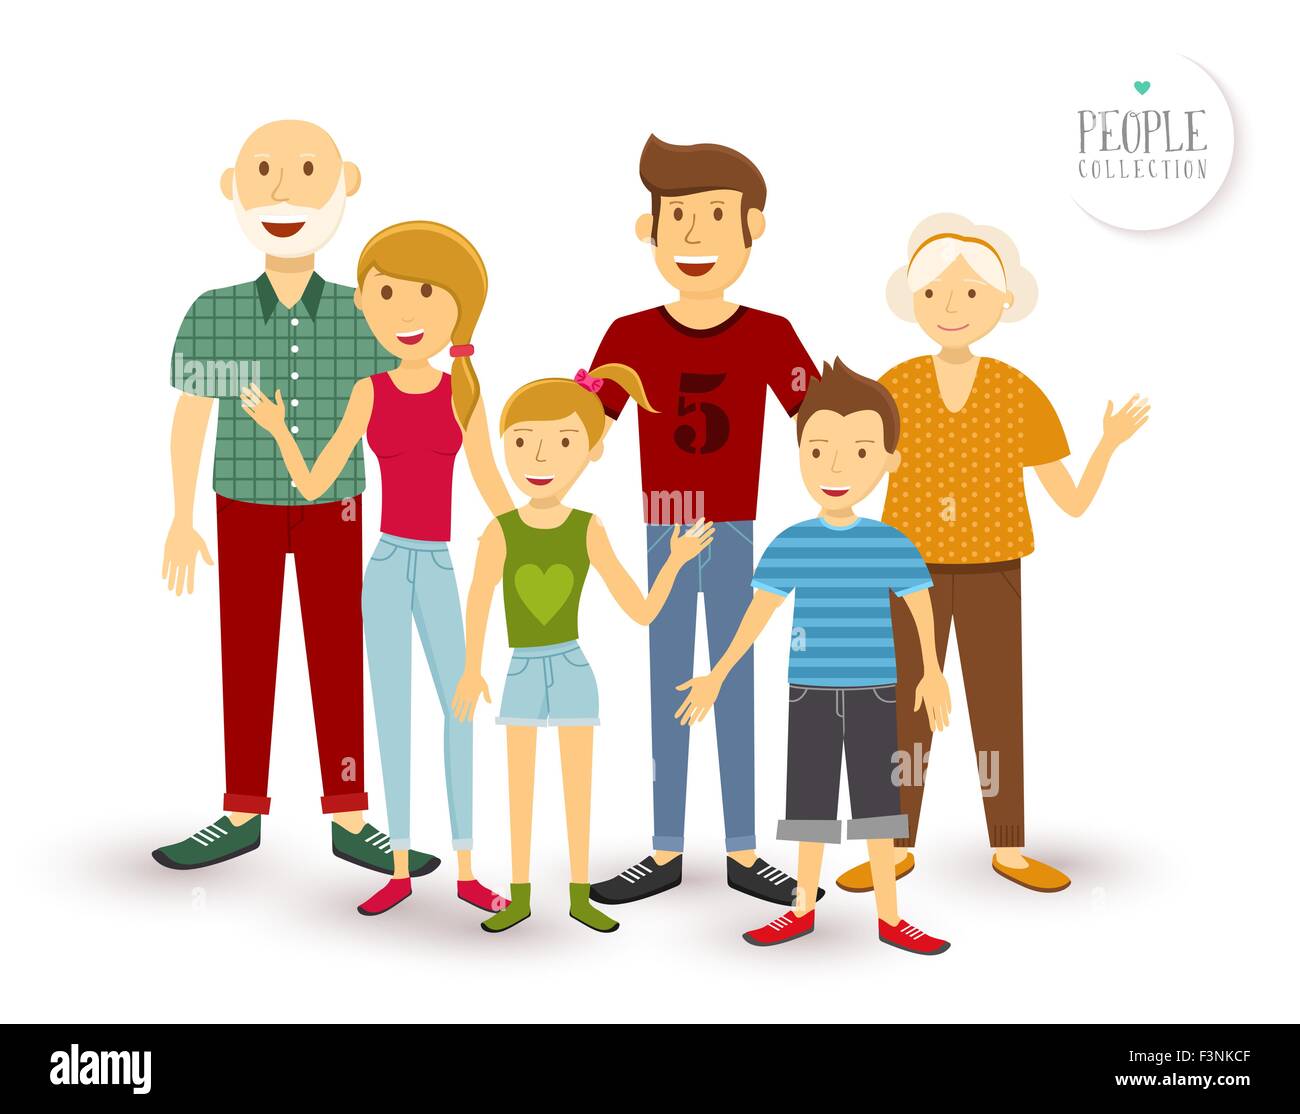 Persone collezione: Happy Family la generazione di gruppo con il papà, mamma, i bambini e i nonni in uno stile piatto illustrazione. EPS10 vecto Illustrazione Vettoriale